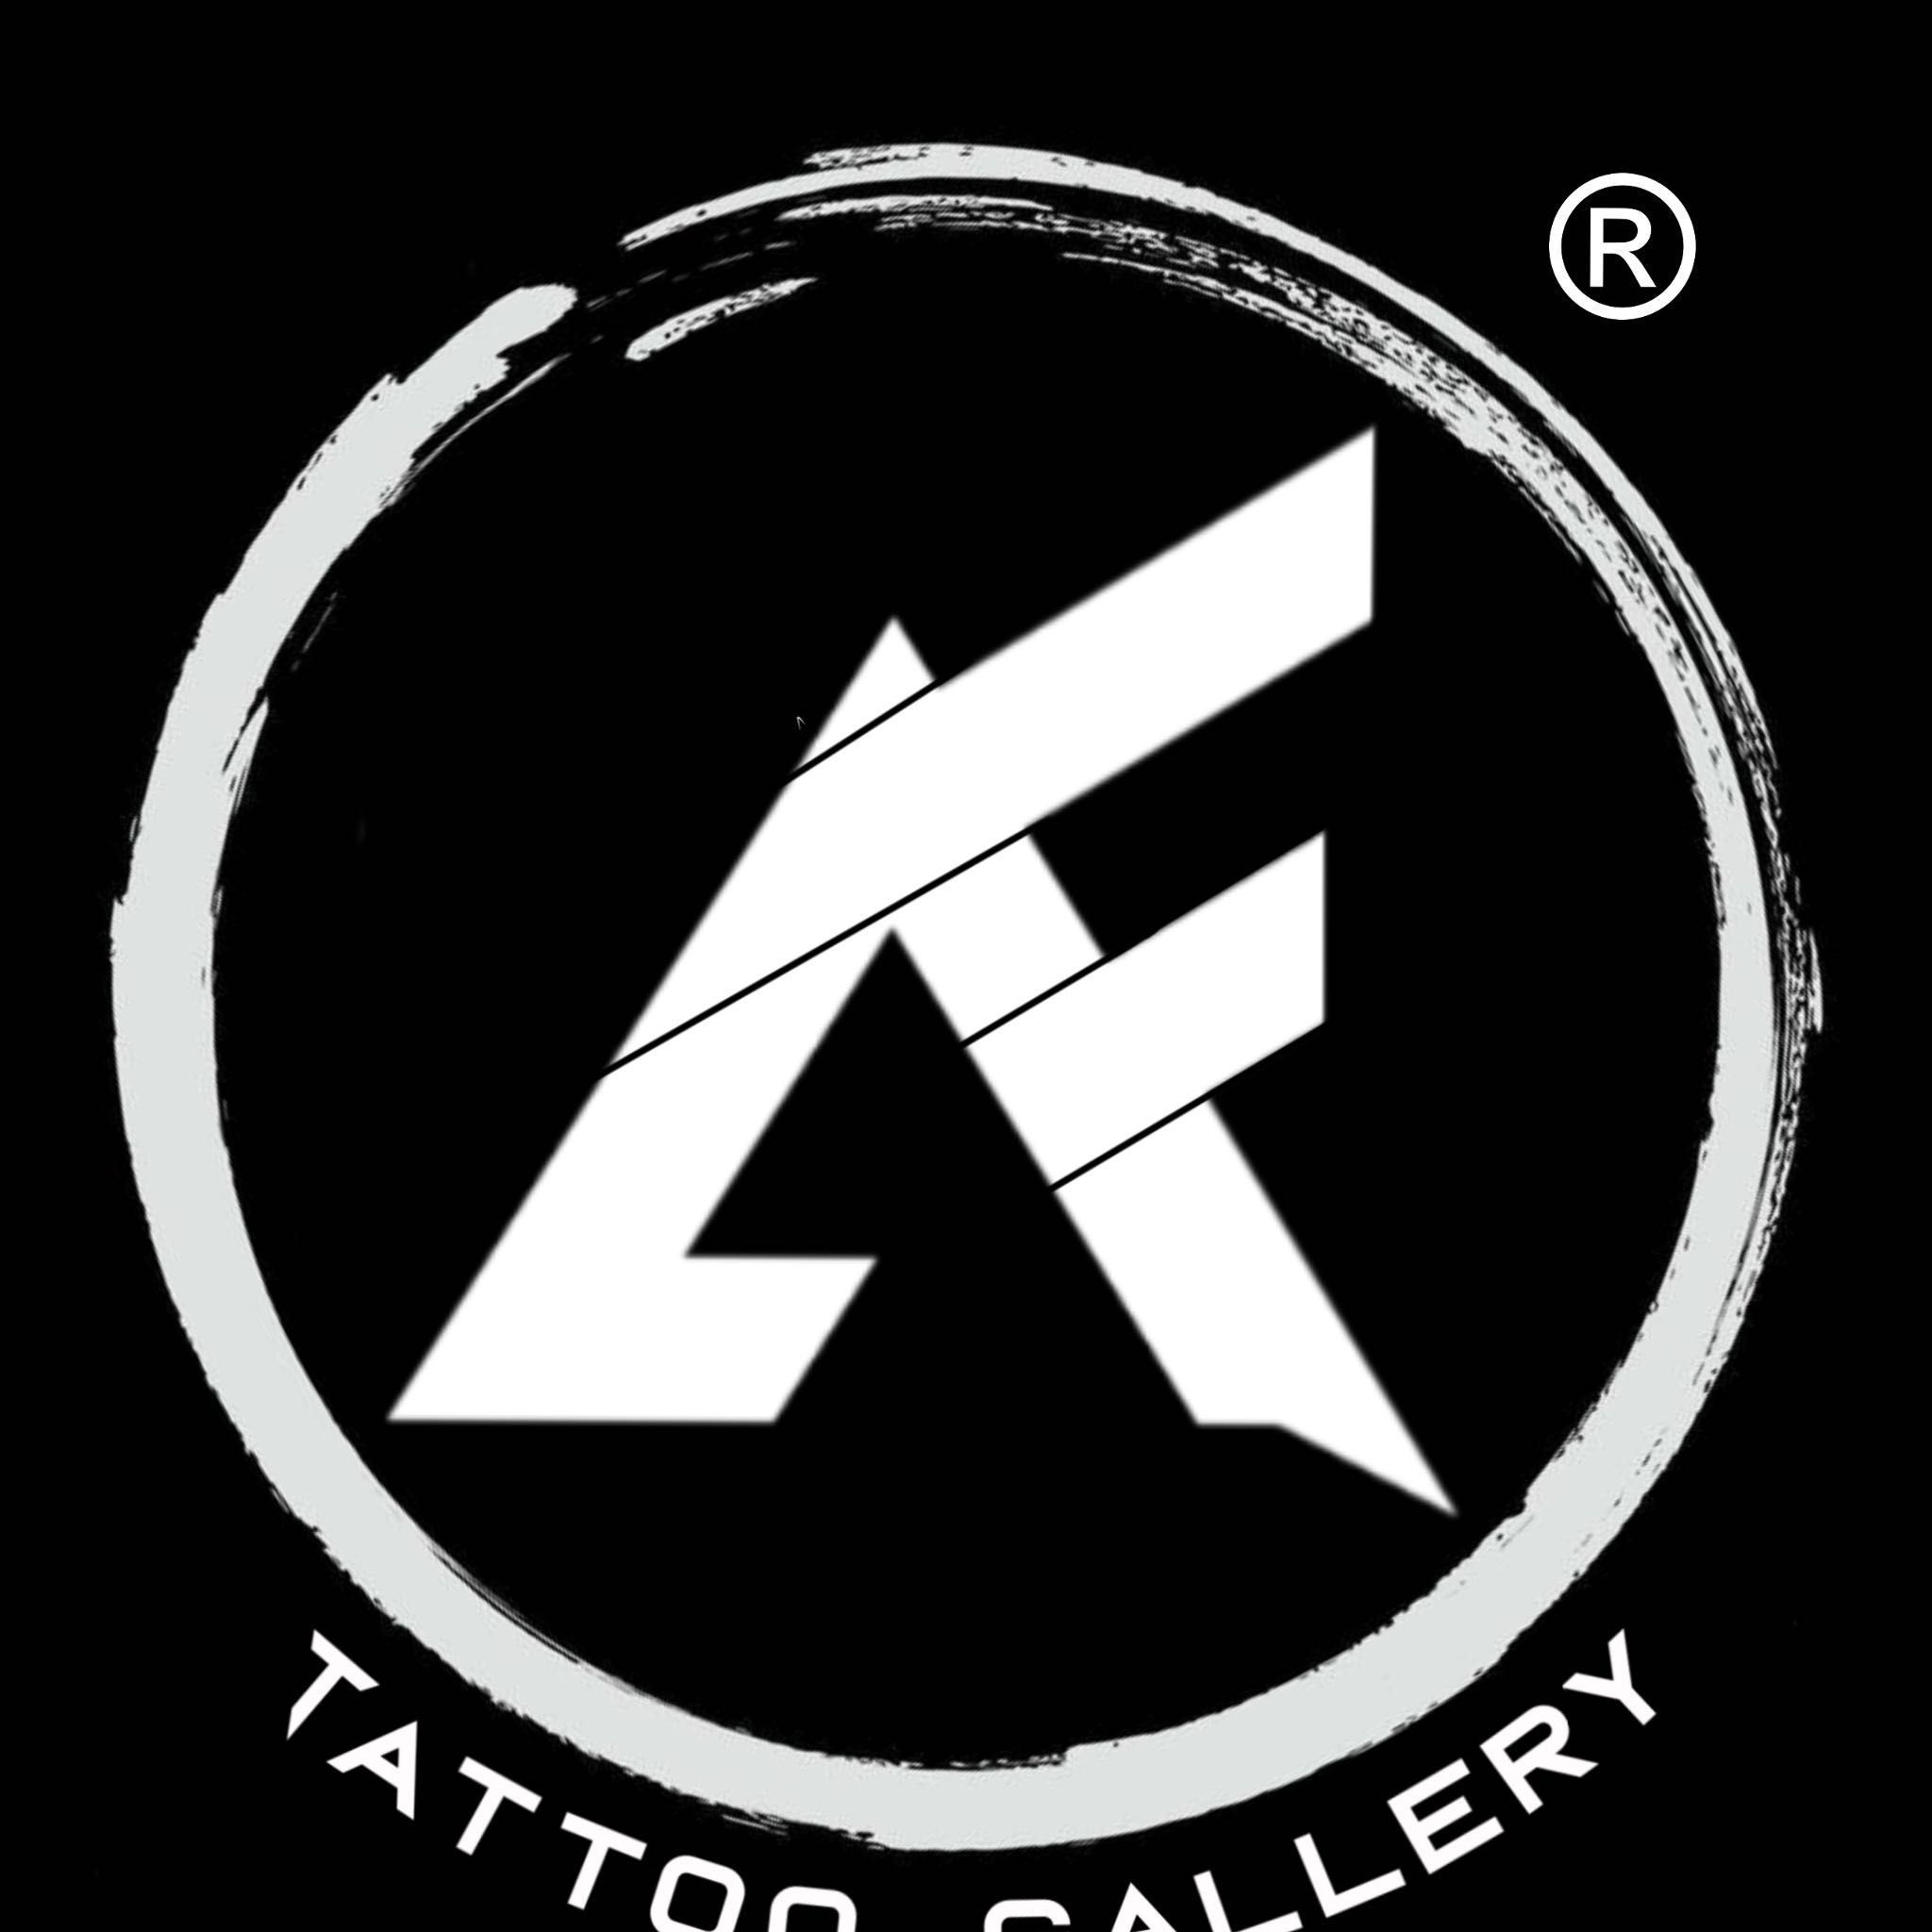 ArtFenixTattoo Gallery, 4429 A , Gunn Hwy, Fénix Tattoo Gallery, Tampa, 33618